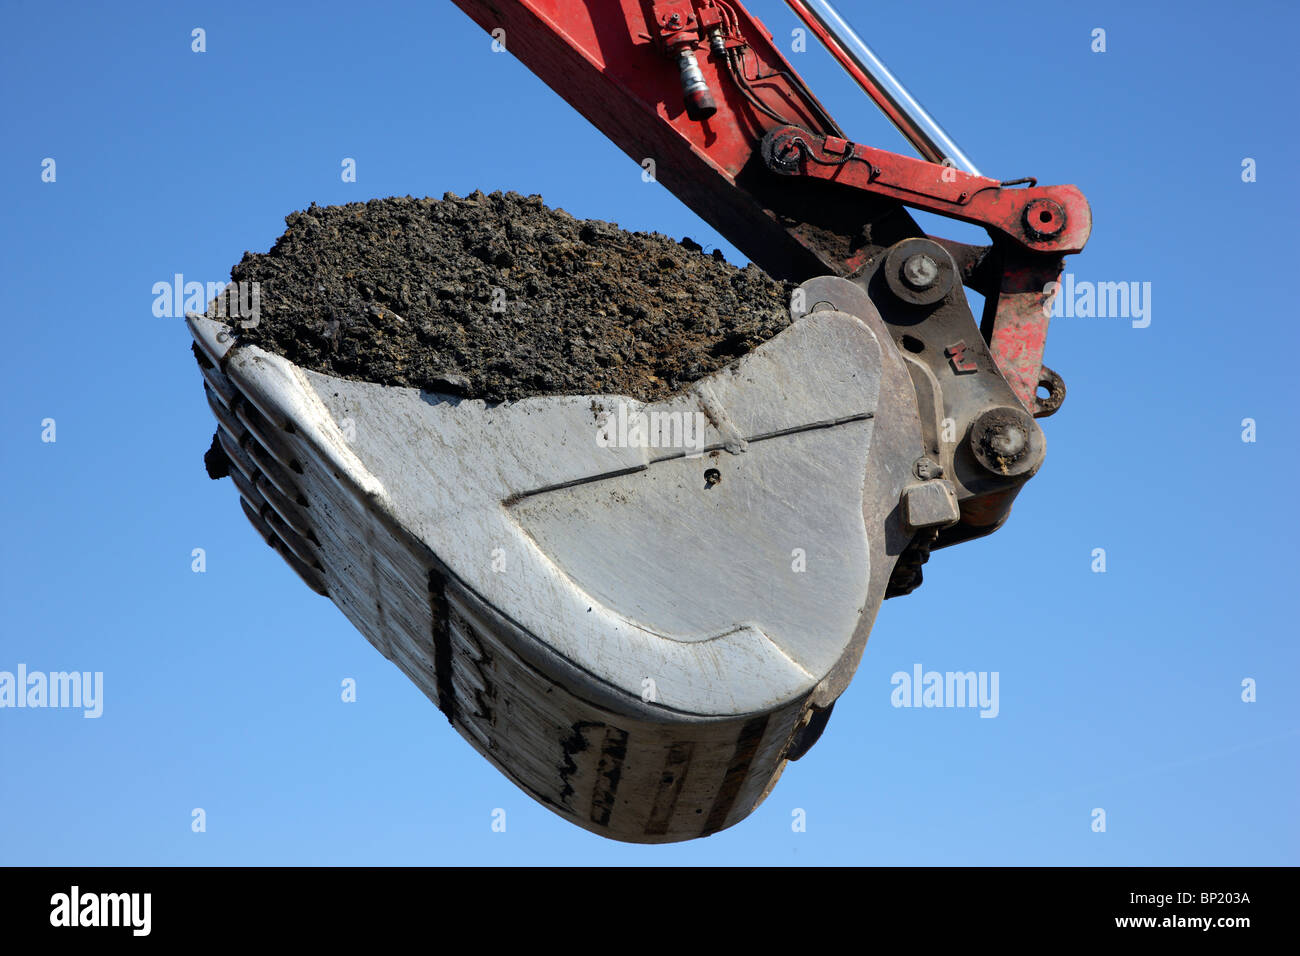 Excavator shovel, full with dark soil. Stock Photo